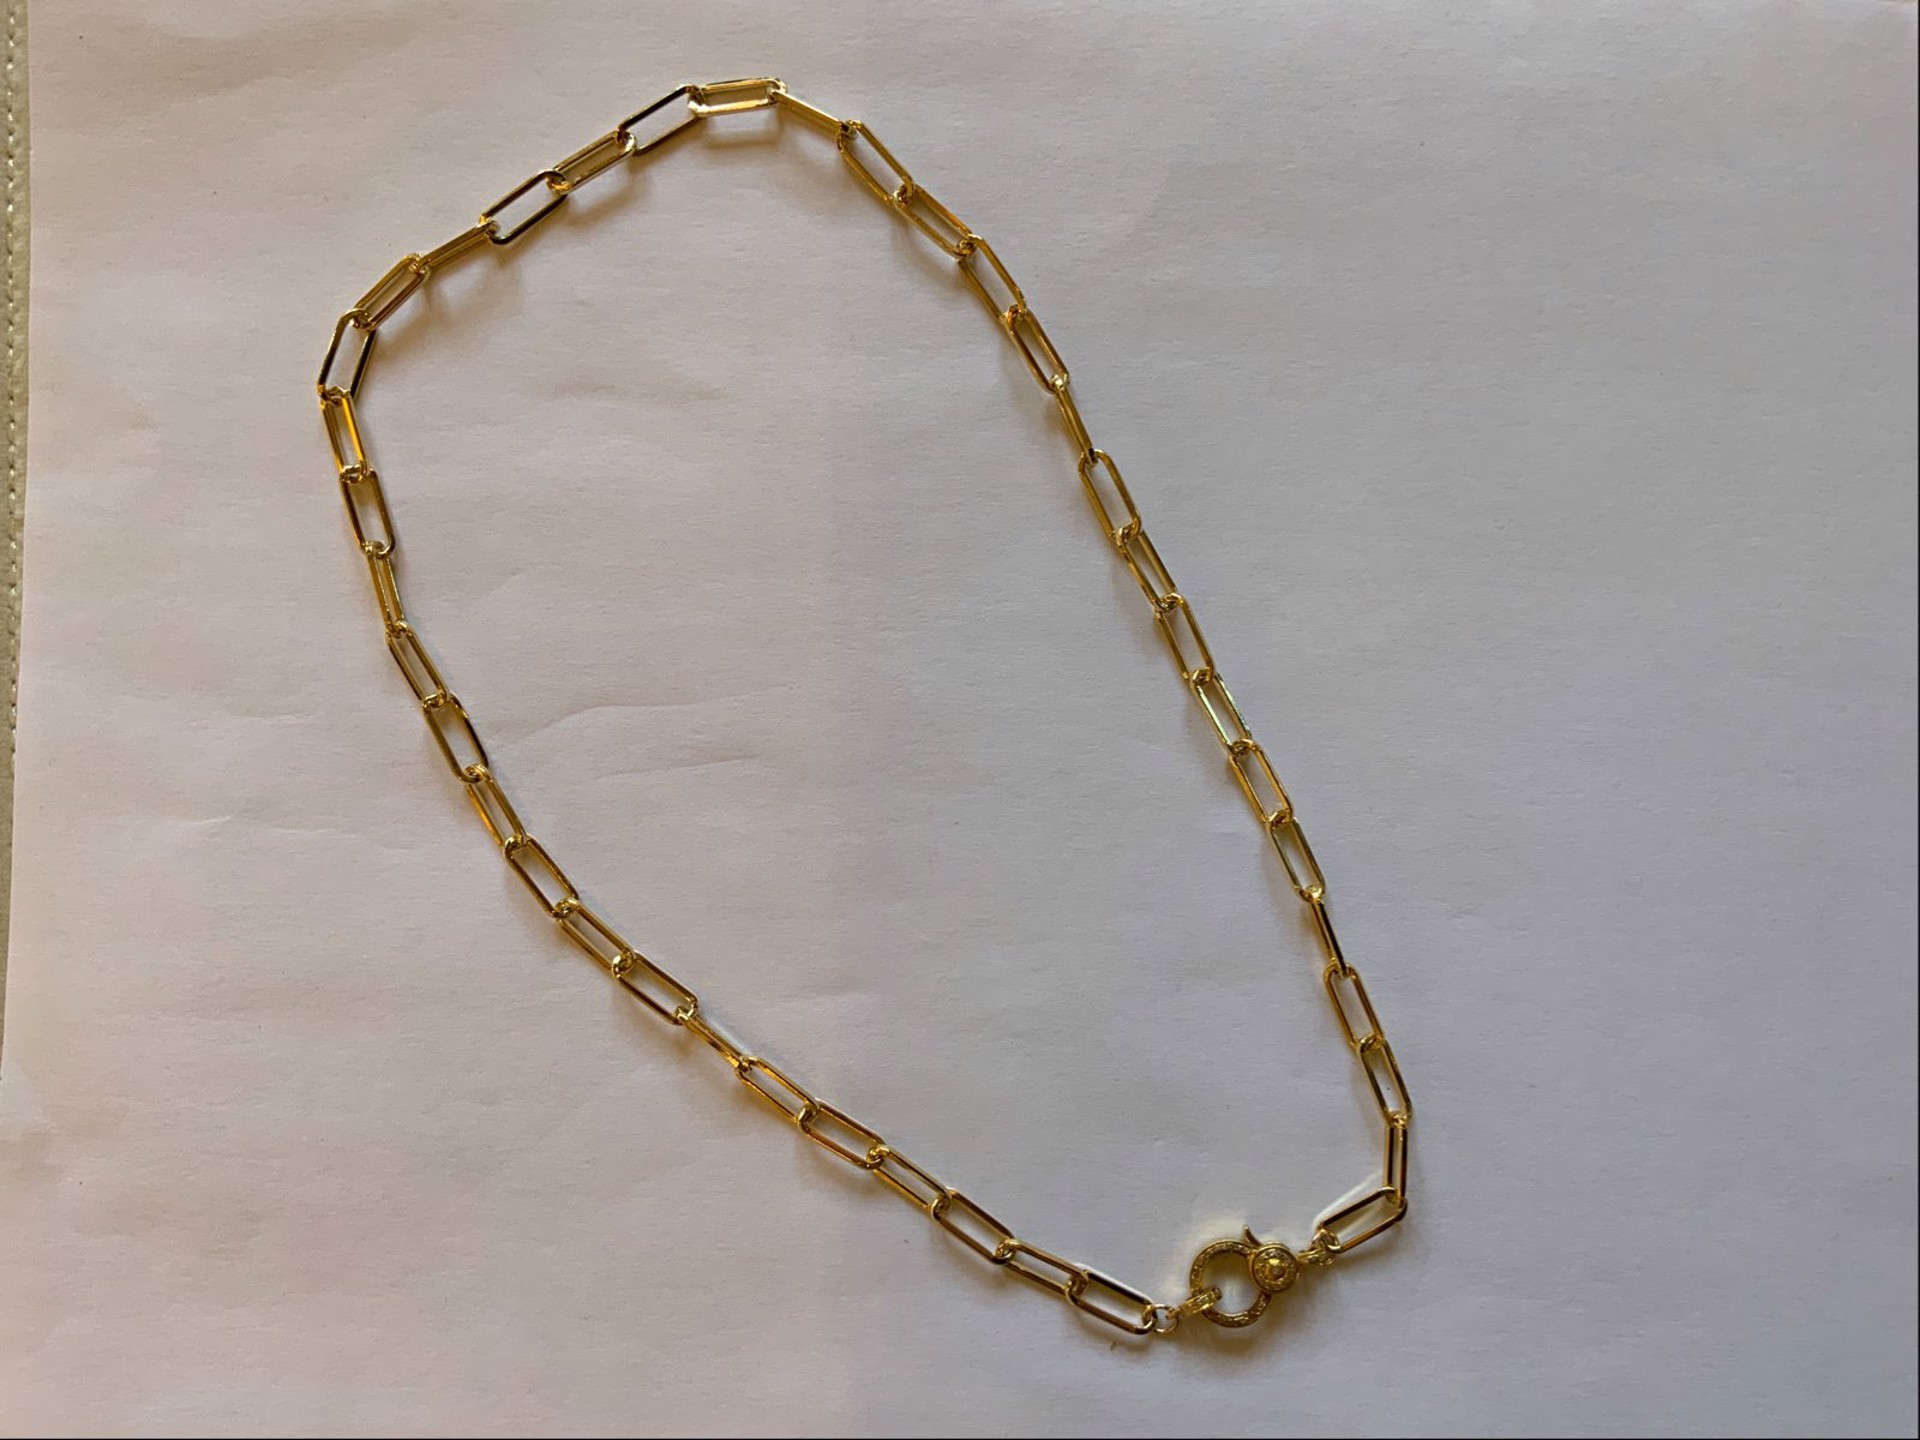 Paper Clip Chain With Pavé Diamonds by Karen Birchmier